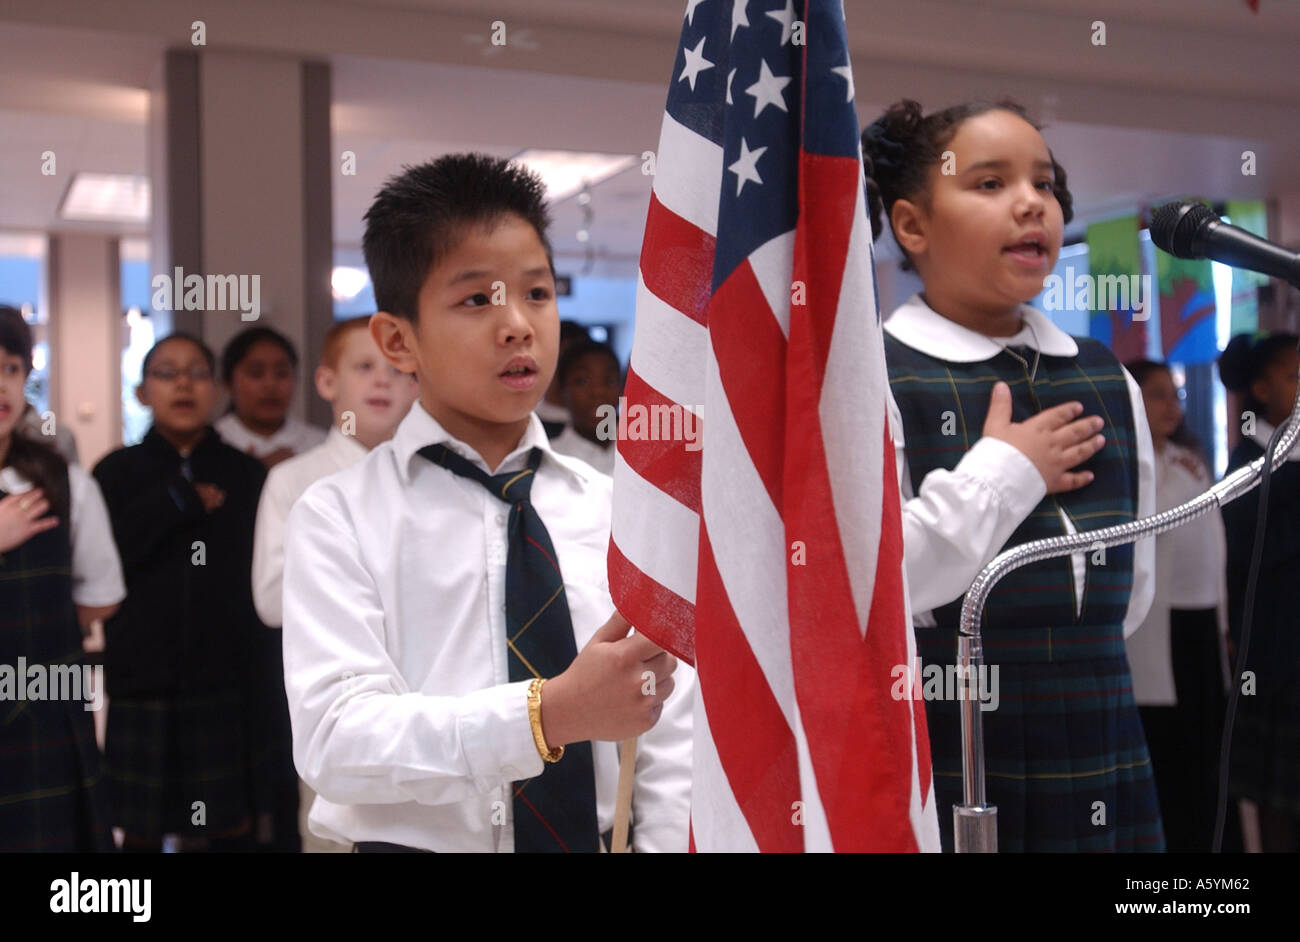 Les élèves récitent le serment d'allégeance au drapeau dans une école du Connecticut-NOUS Banque D'Images